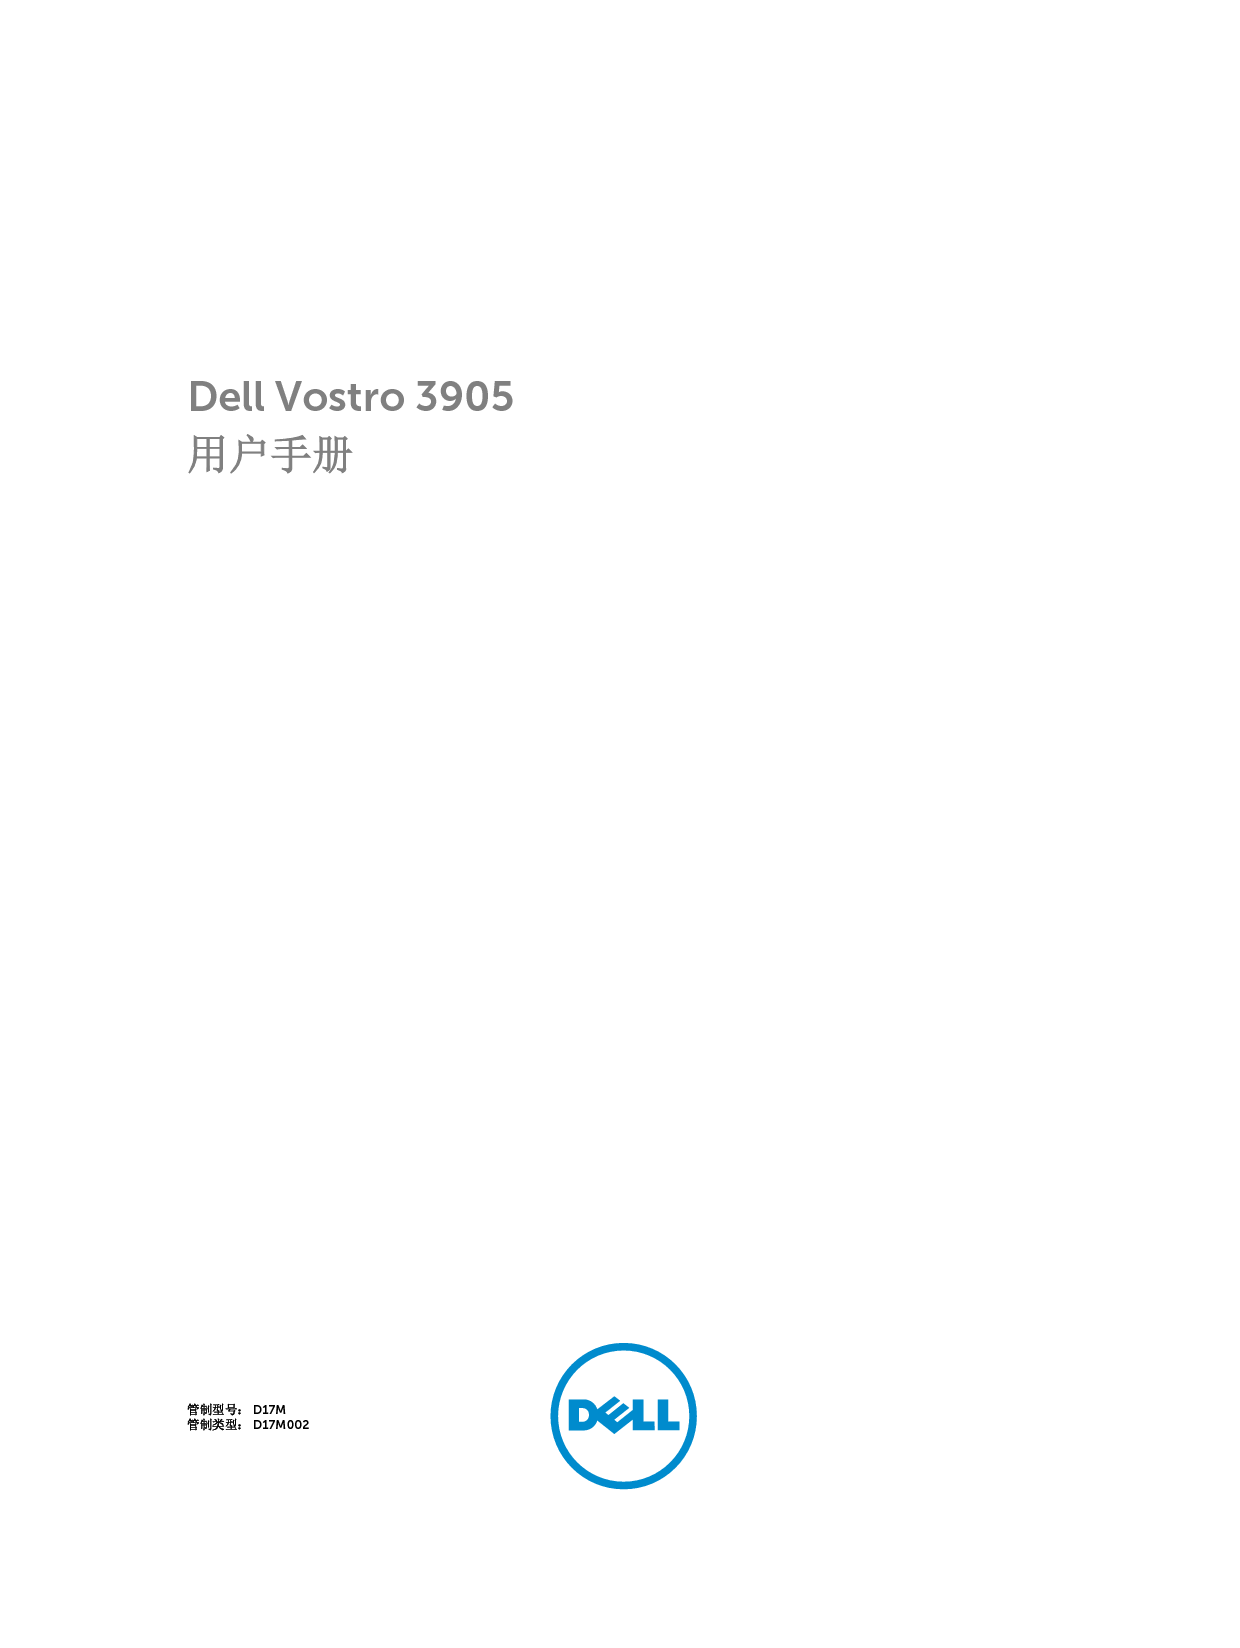 戴尔 Dell Vostro 3905 用户手册 封面